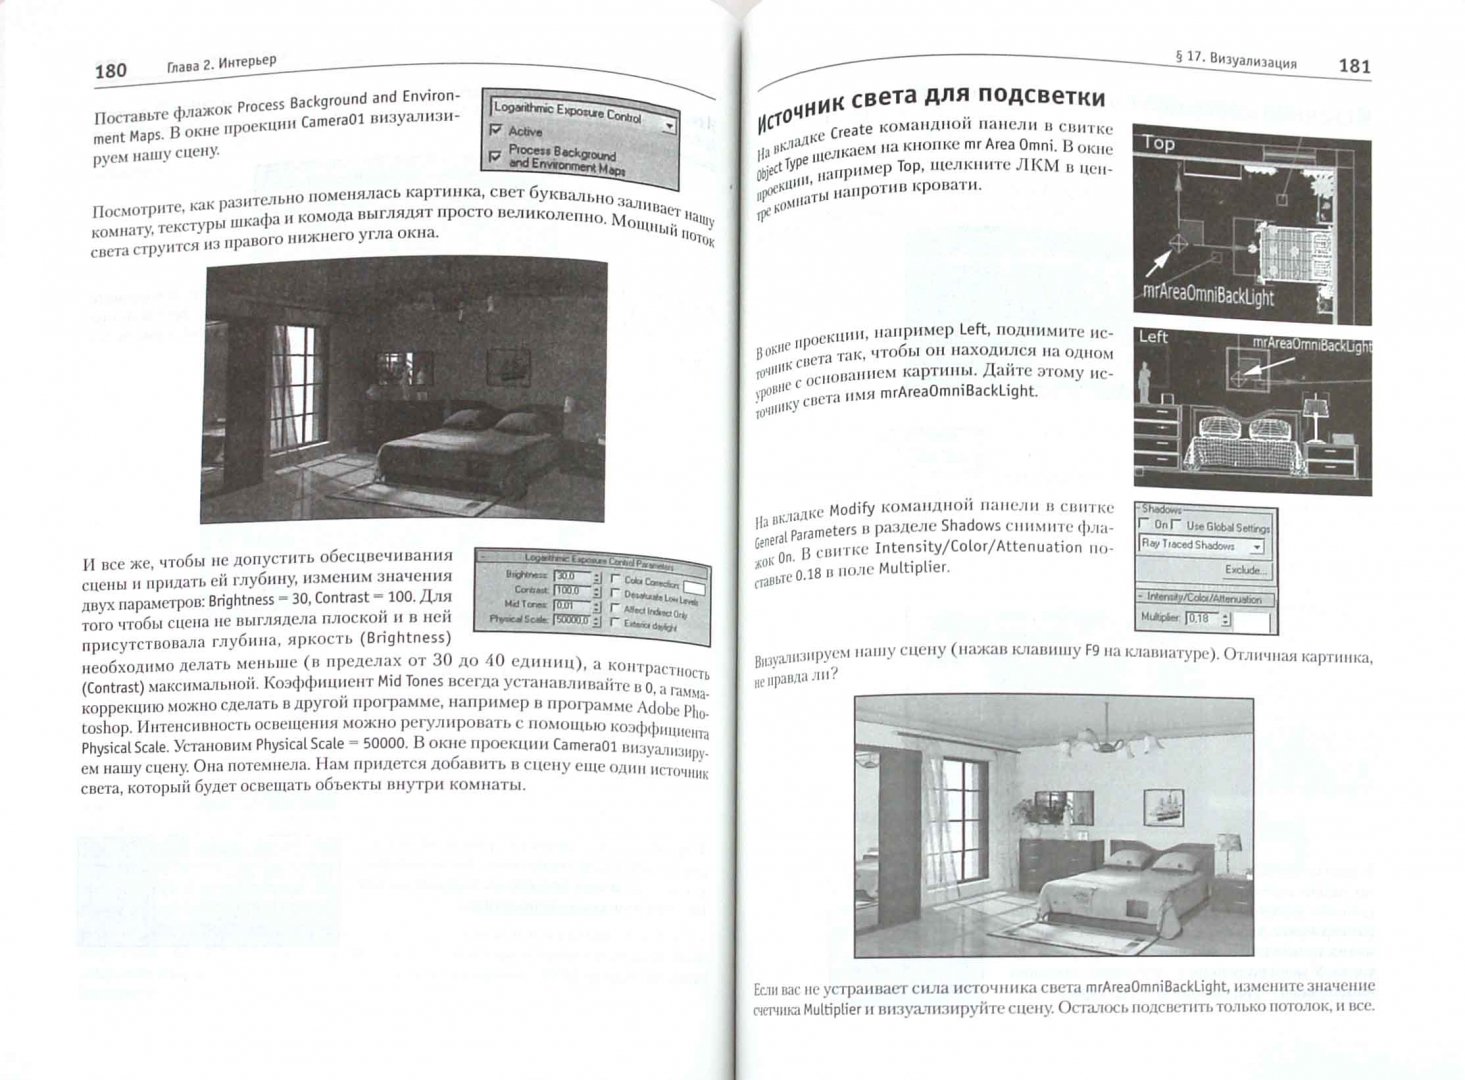 Иллюстрация 1 из 15 для Технология дизайна в 3ds Max 2011. От моделирования до визуализации (+CD) - Геннадий Пронин | Лабиринт - книги. Источник: Лабиринт